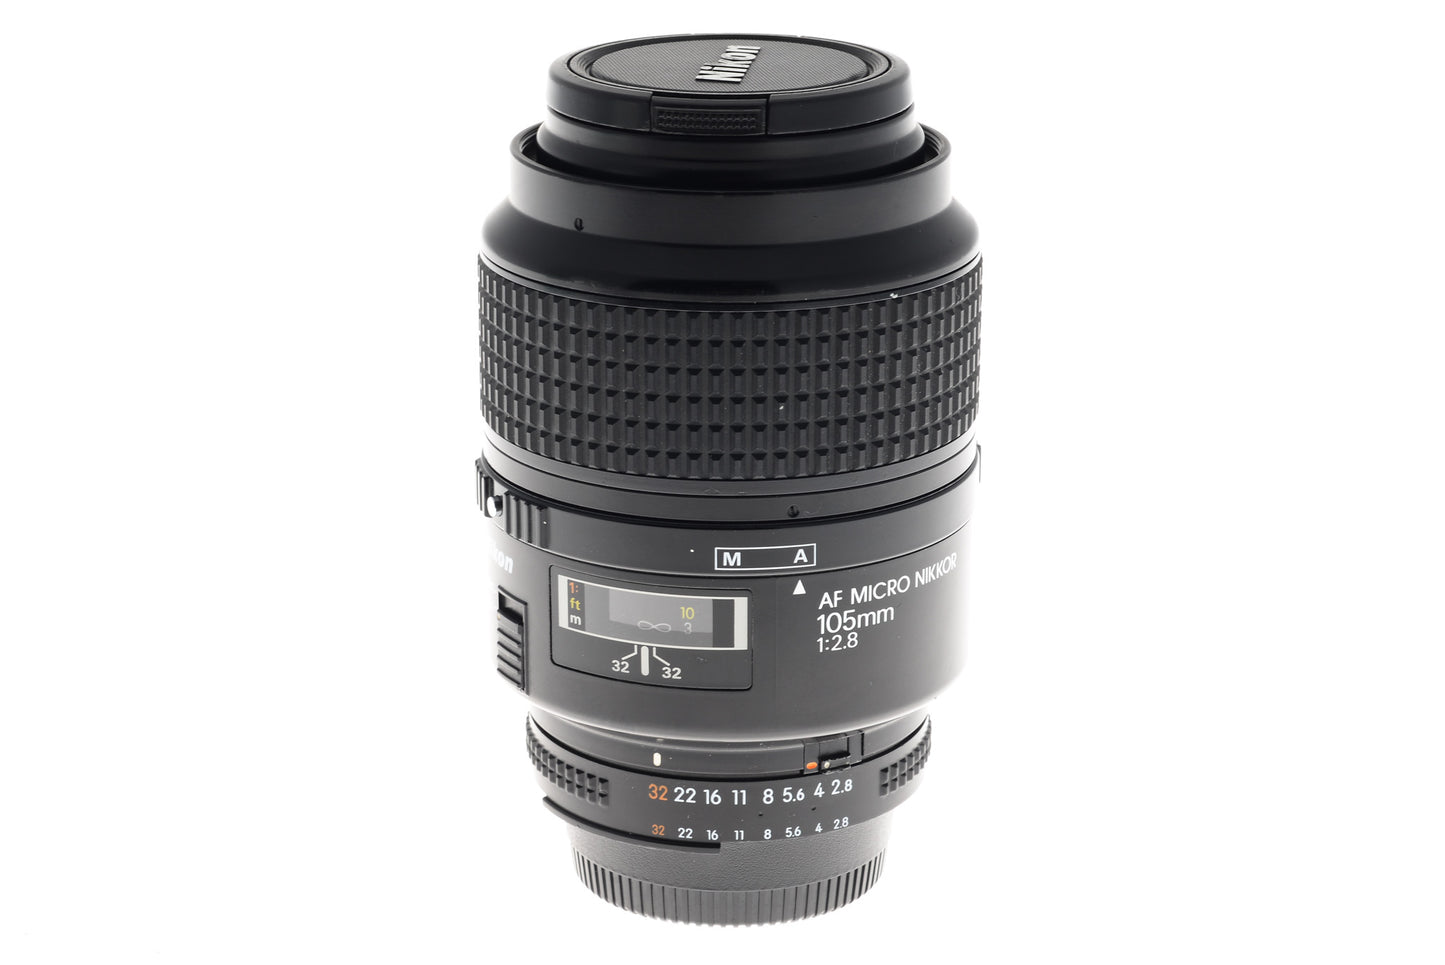 Nikon 105mm f2.8 AF Micro Nikkor - Lens